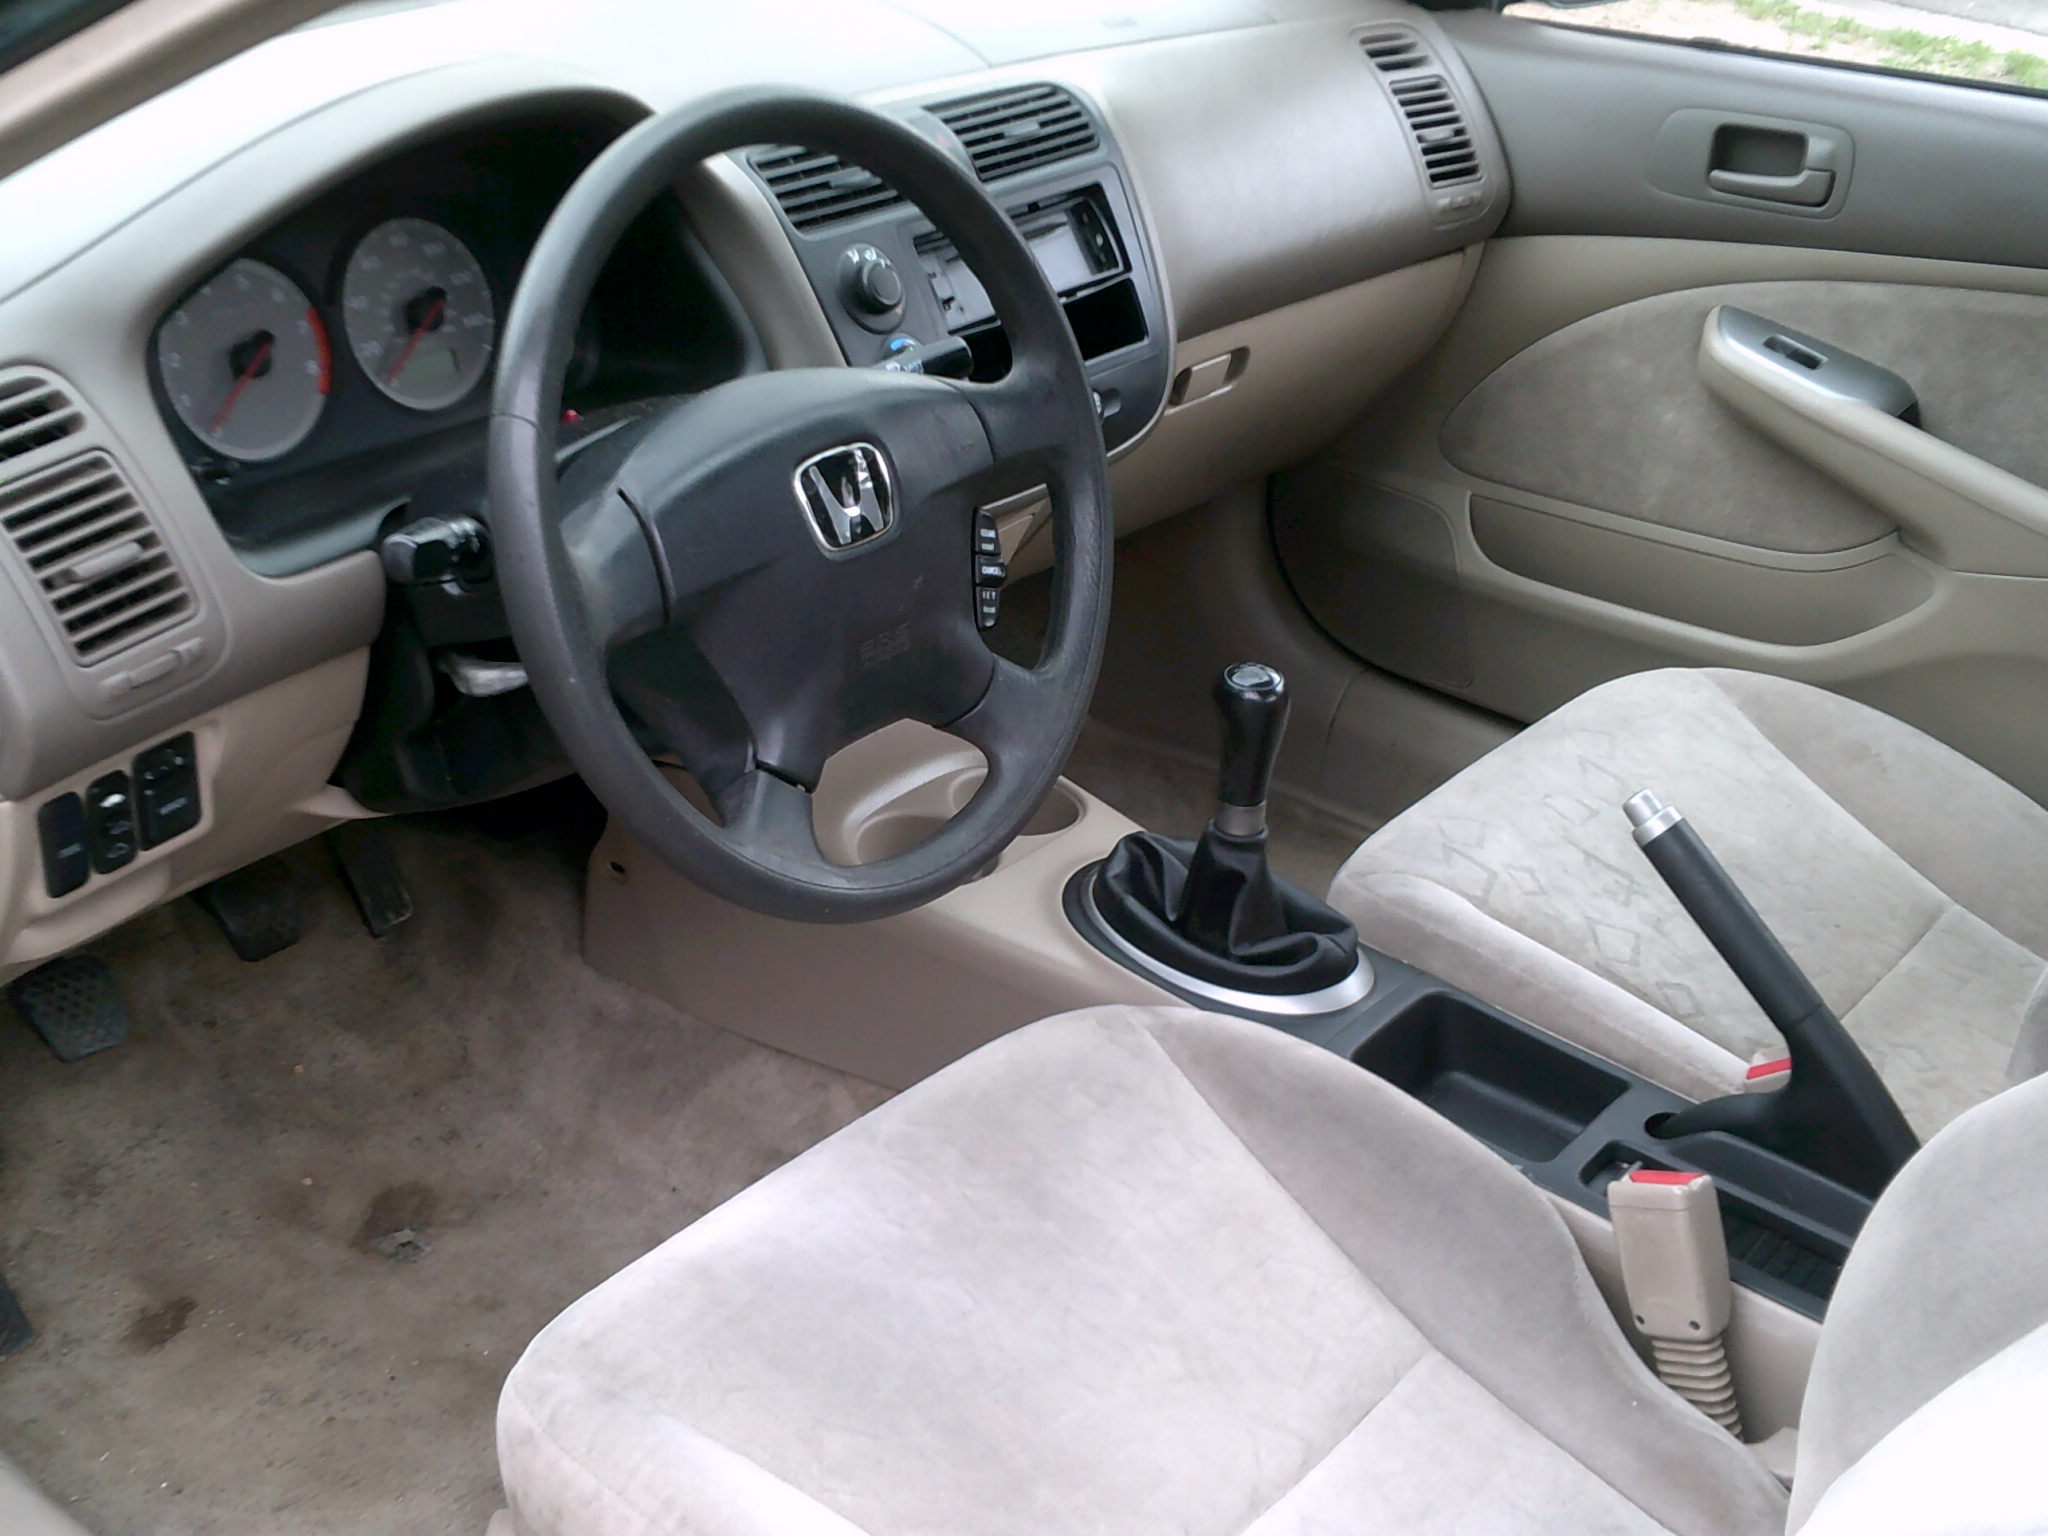 Honda Civic Ex 2000 Interior